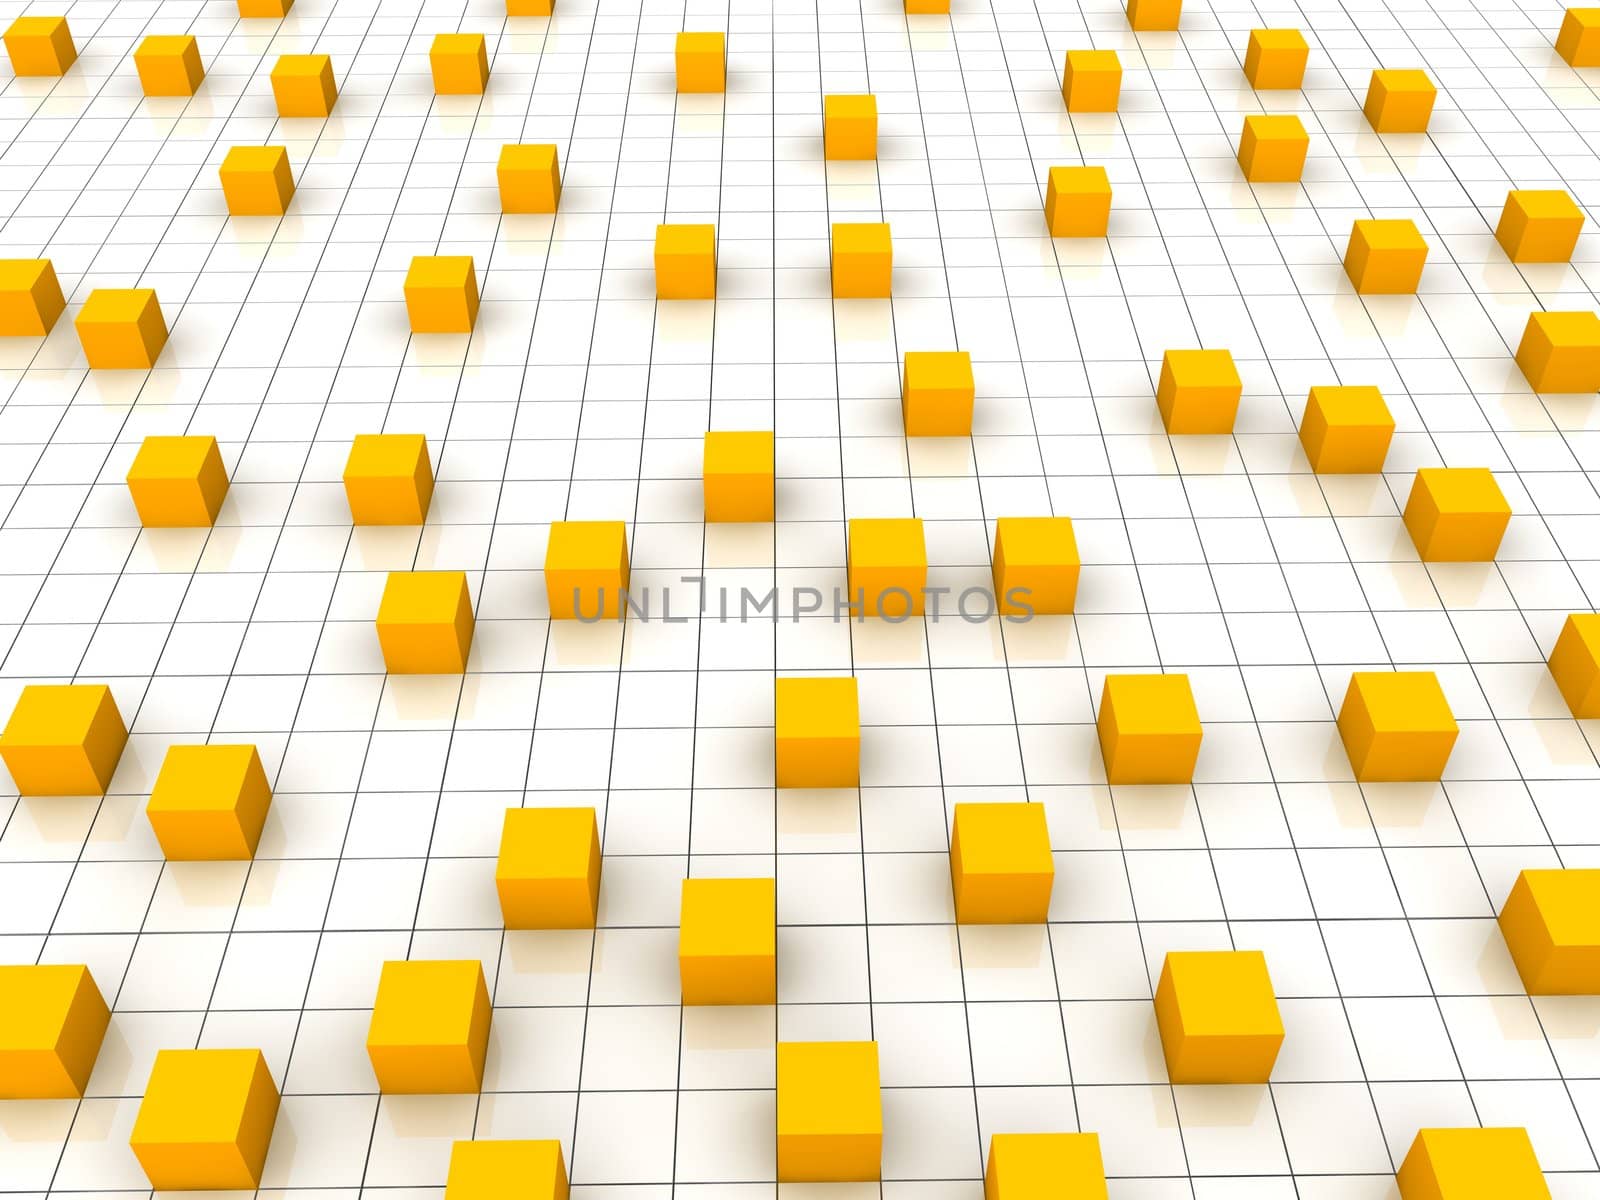 Orange cubes on the grid background. 3d rendered illustration.